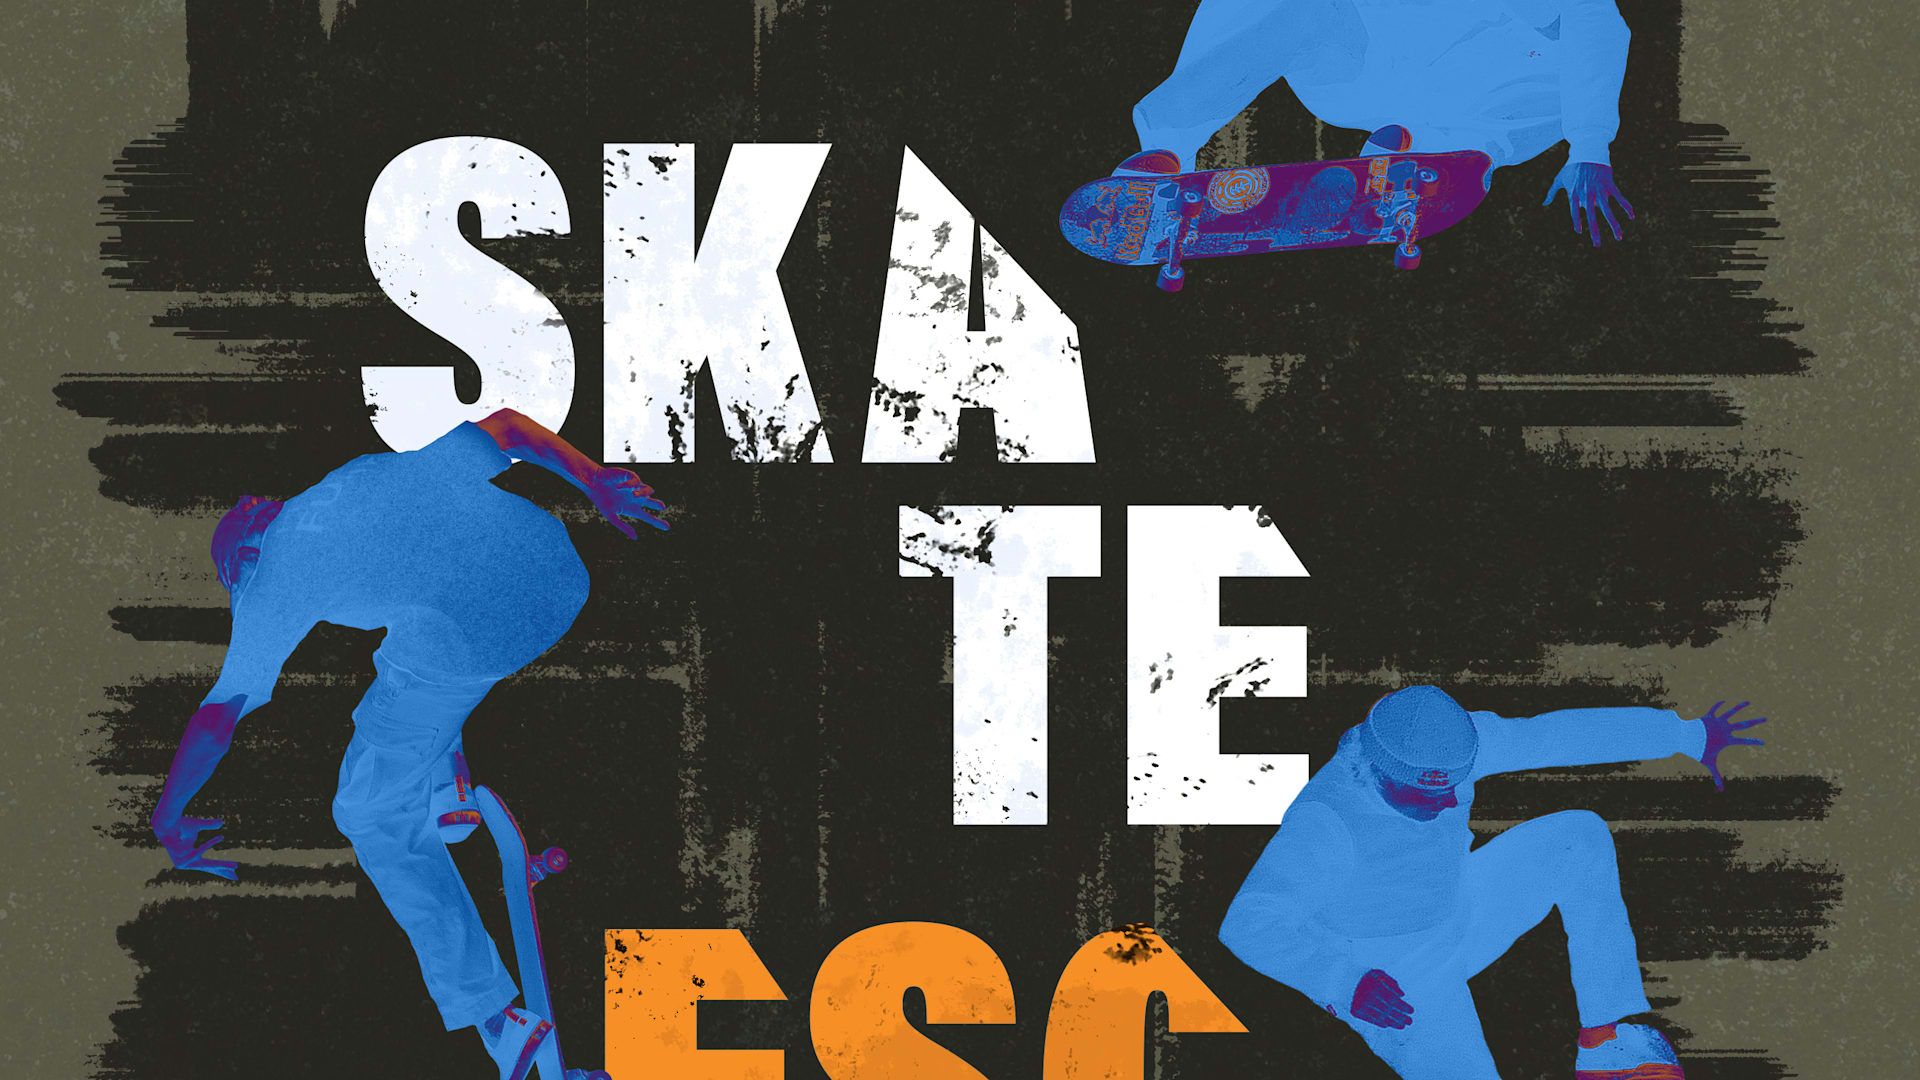 Skate Escape